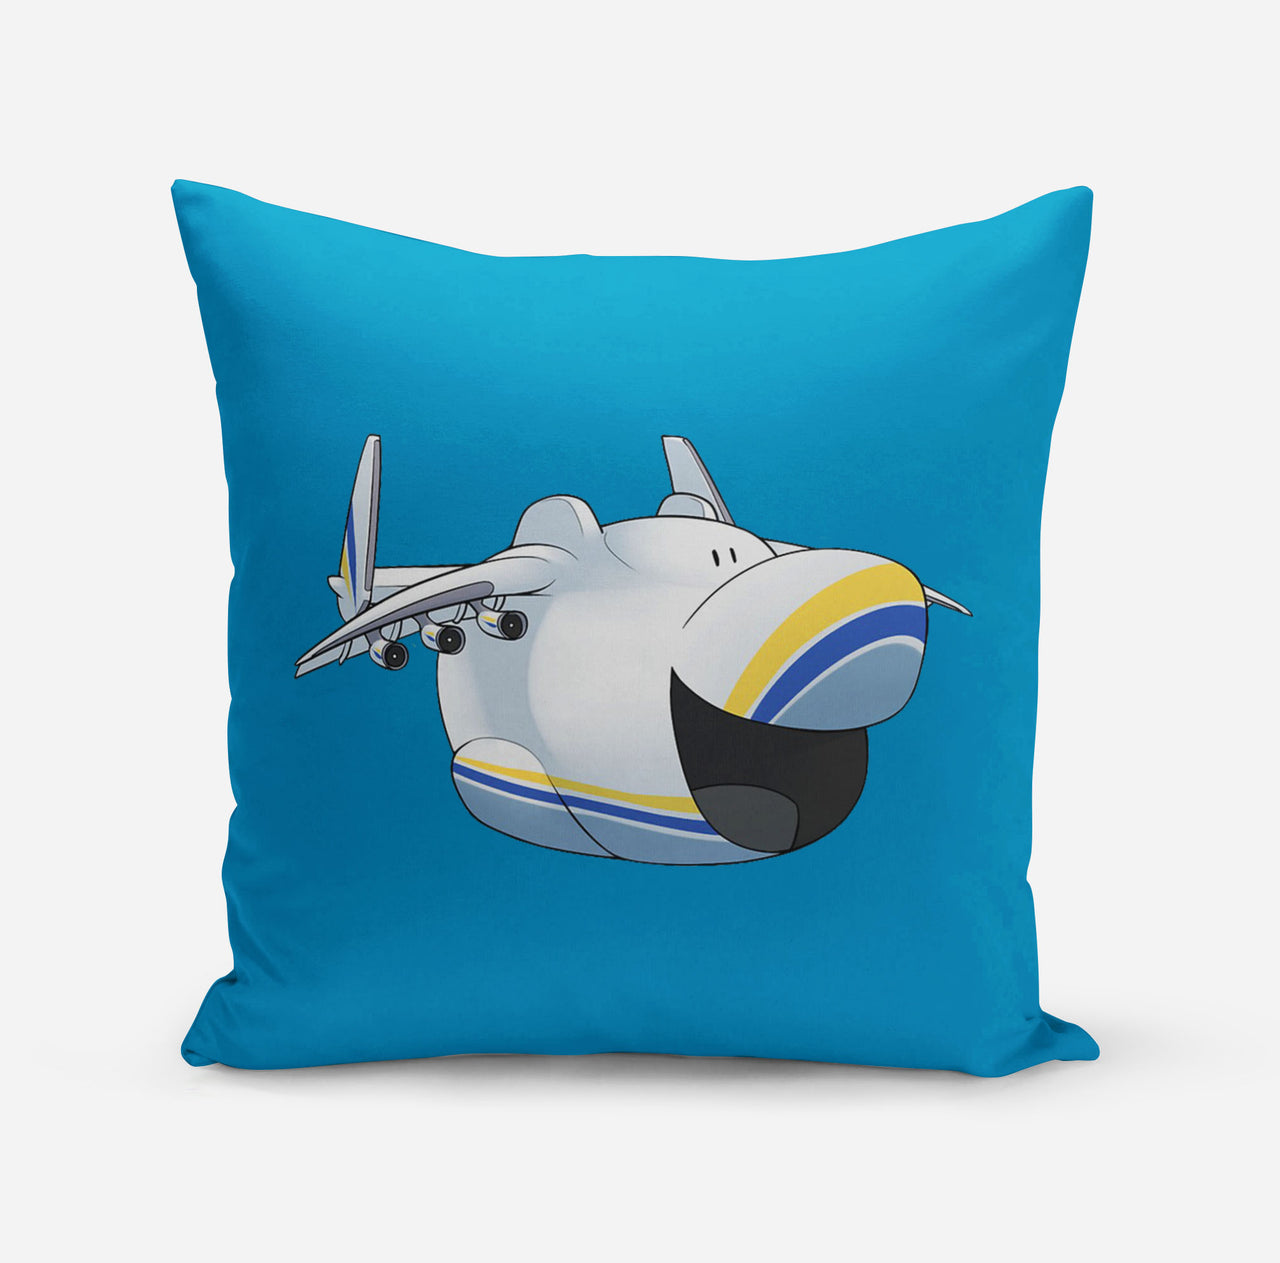 Antonov 225 Mouth Designed Pillows